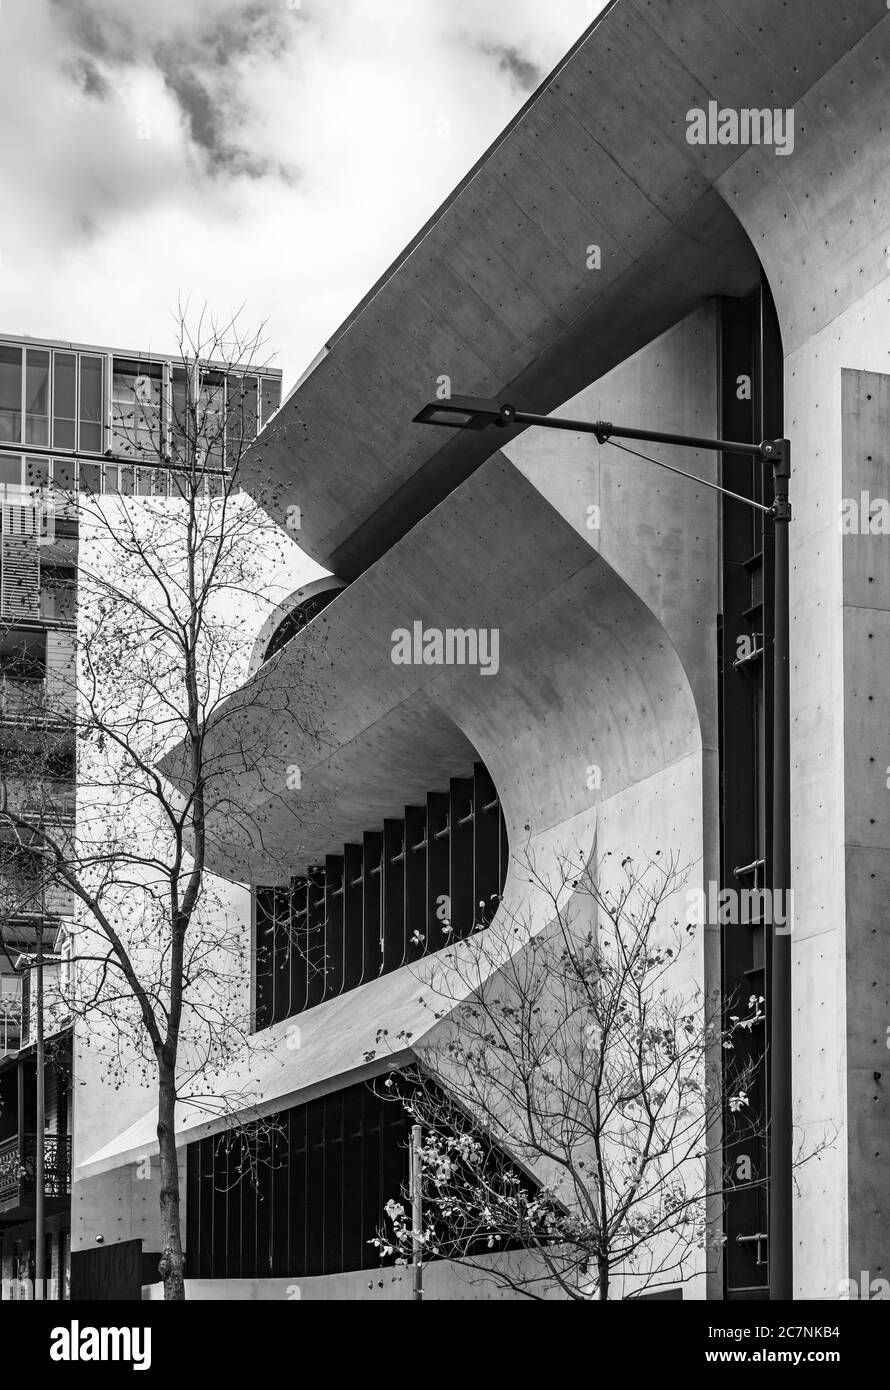 El edificio Indigo Slam en Chippendale, Sydney Foto de stock